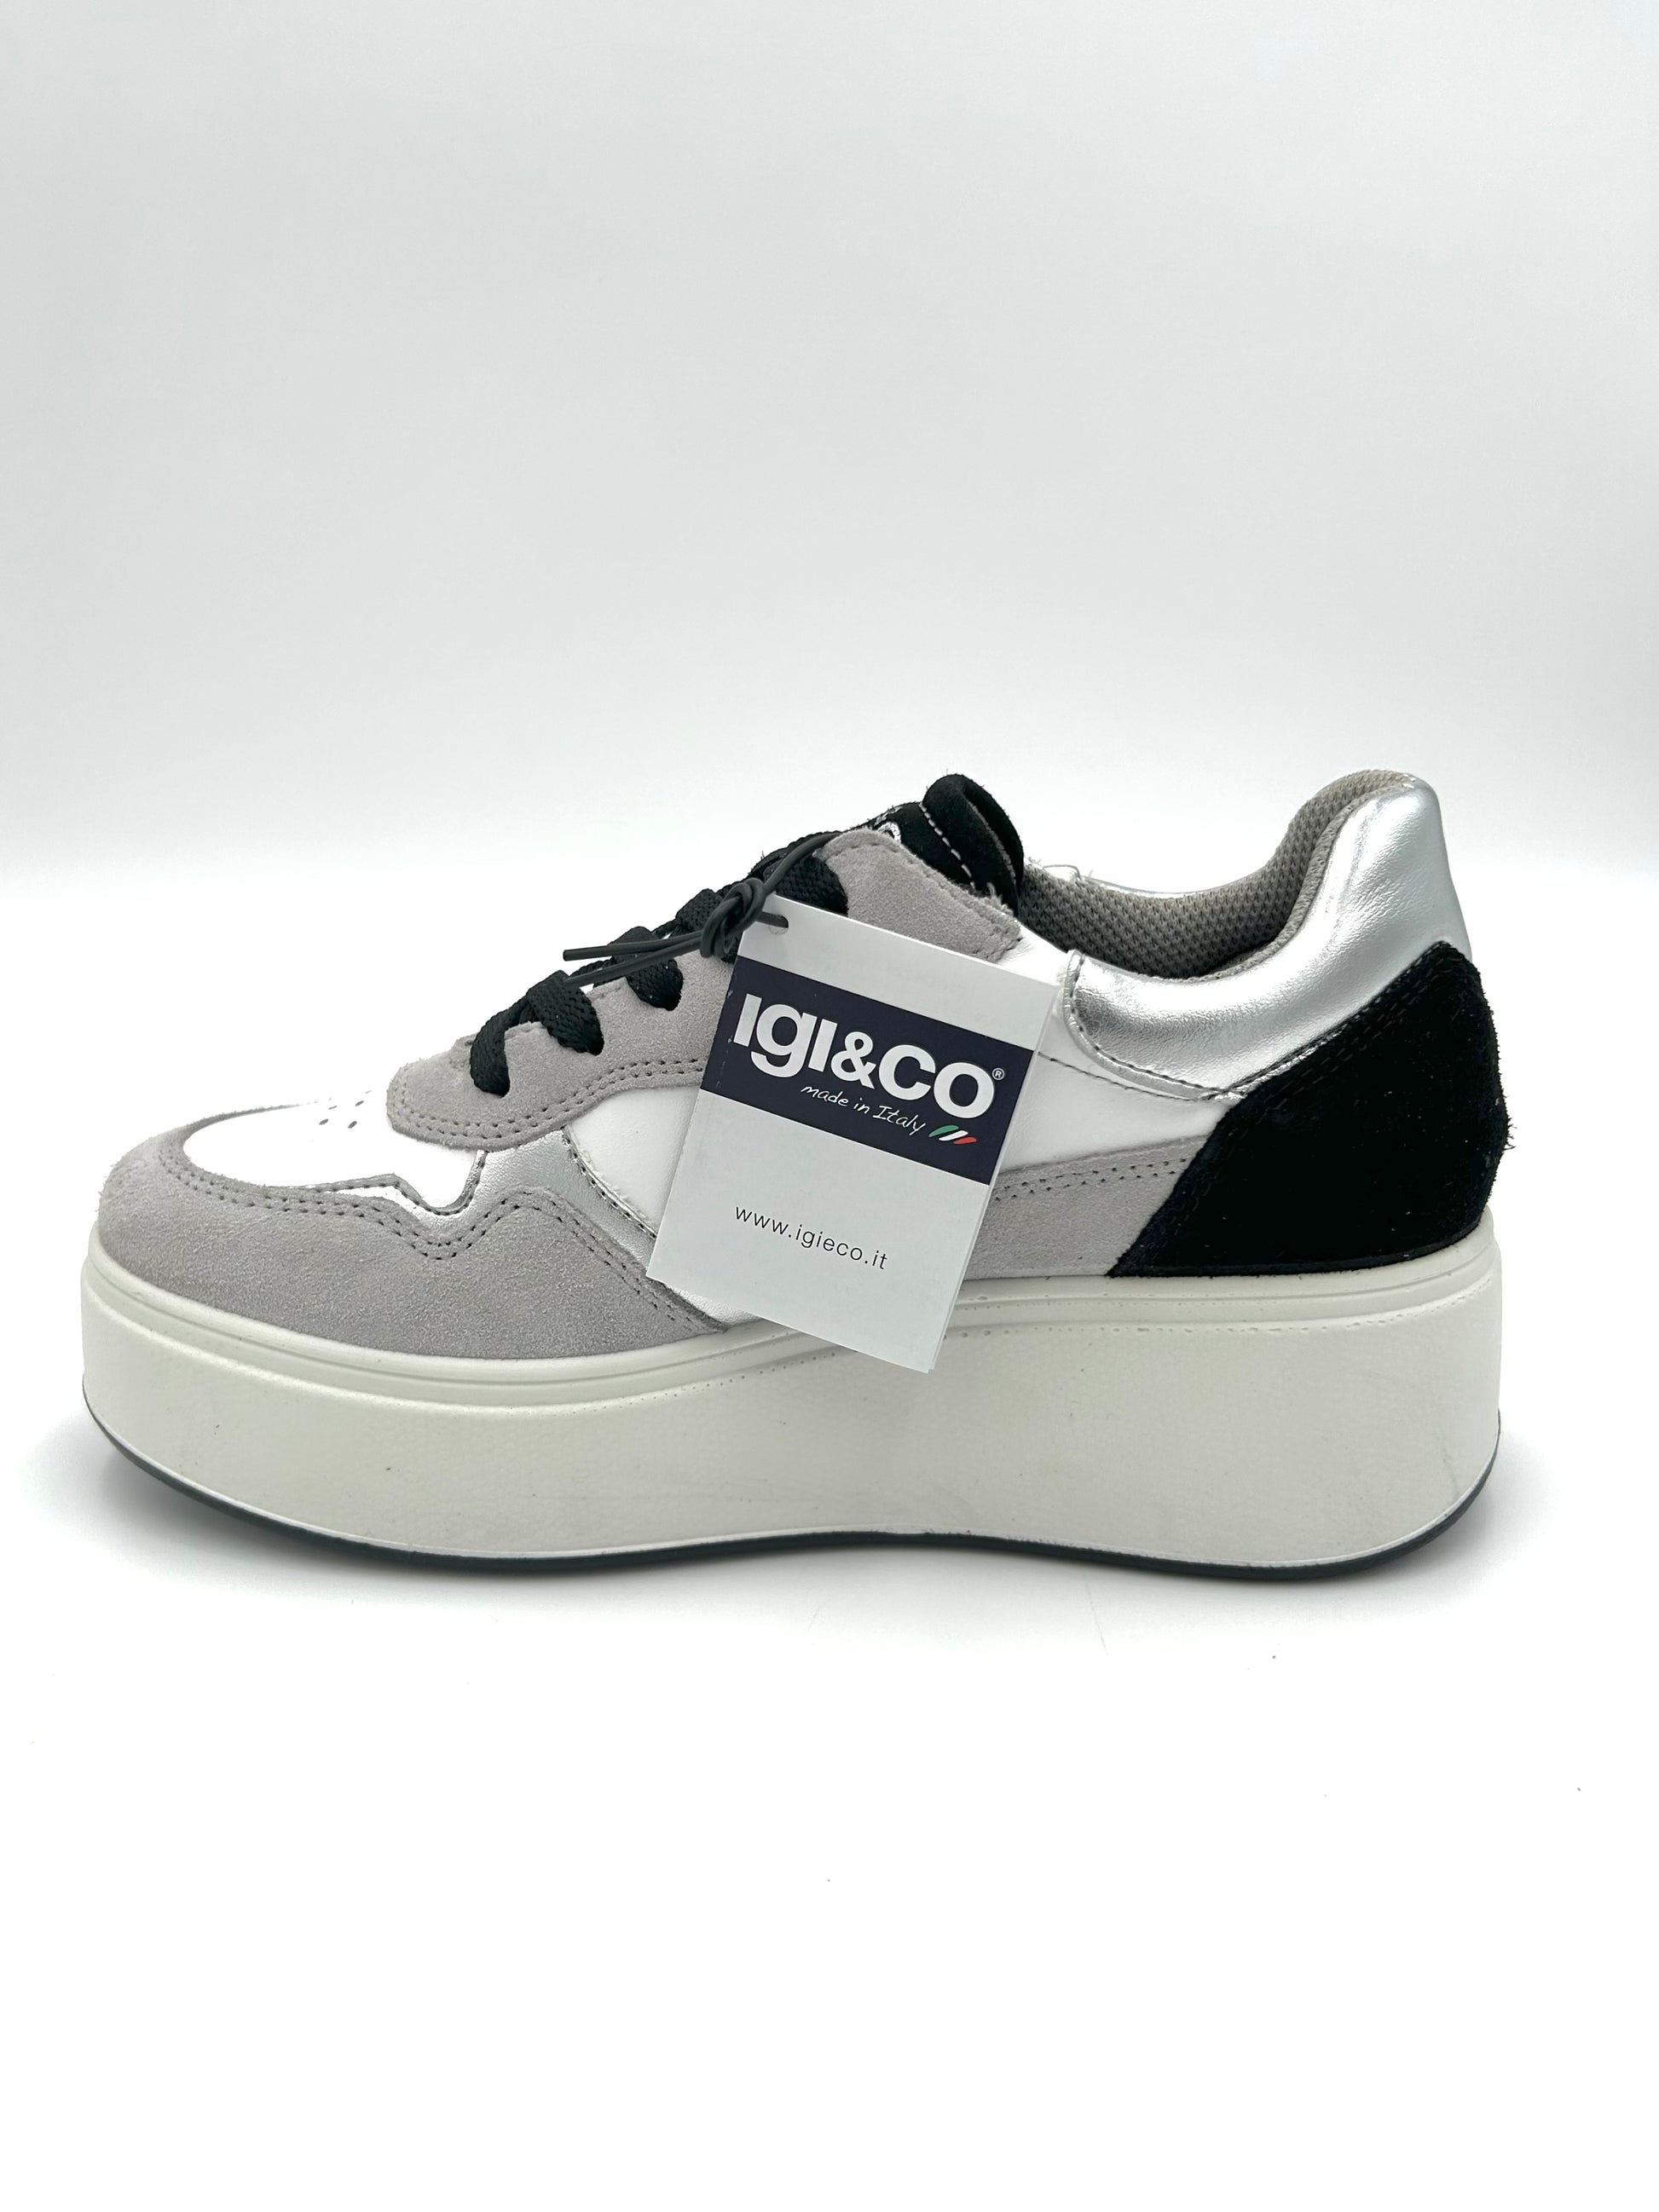 Igi&co Sneakers platform scamosciata in pelle - perla bianco grigio nero - Igi&co